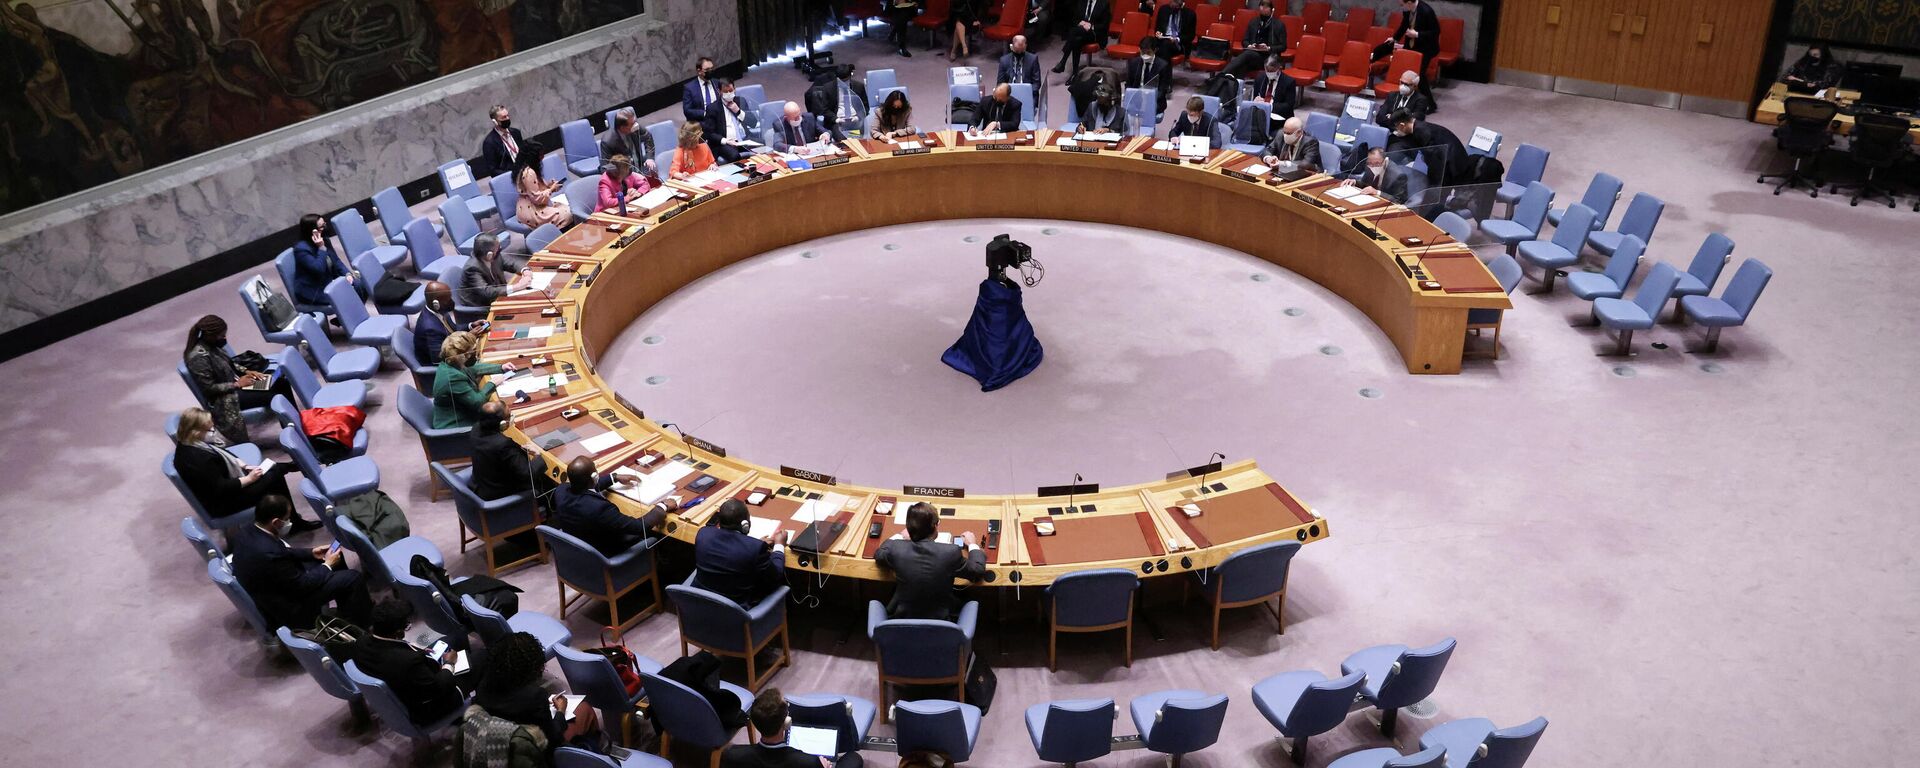 جلسة نقاش مجلس الأمن الدولي حول أزمة أوكرانيا وروسيا، الأمم المتحدة، نيويورك، الولايات المتحدة 31 يناير 2022  - سبوتنيك عربي, 1920, 22.03.2022